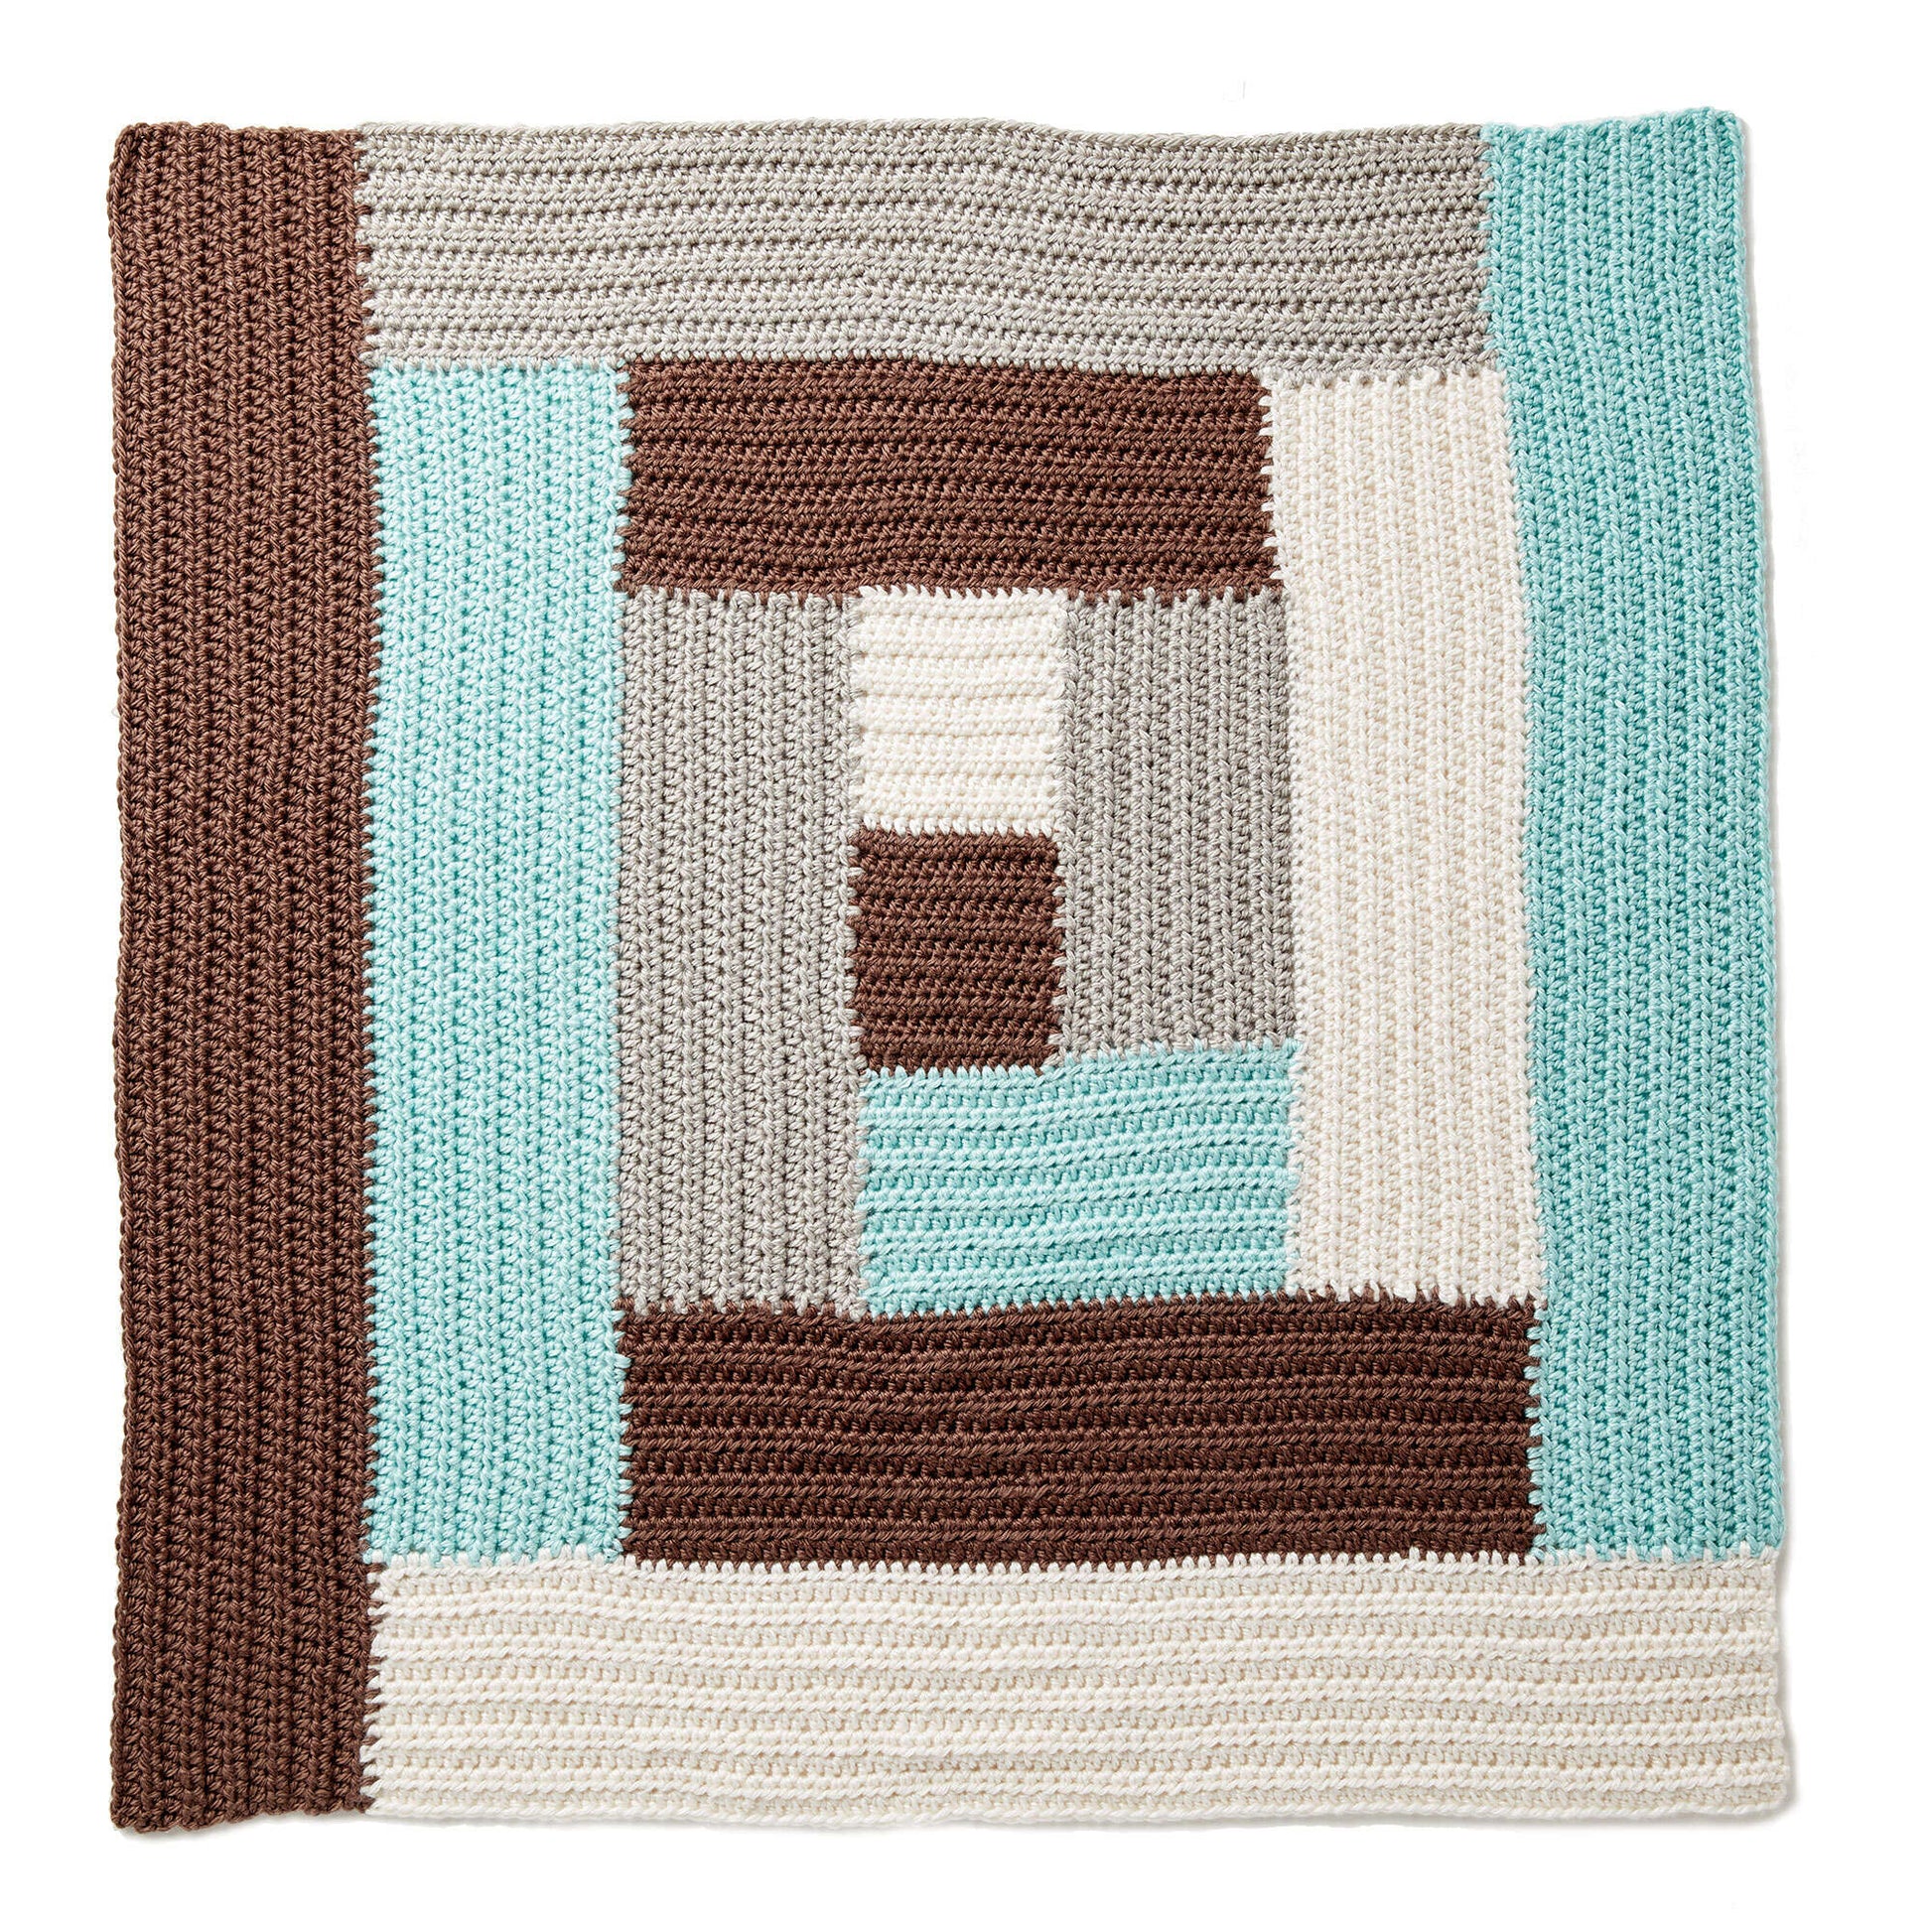 Free Bernat Log Cabin Crochet Baby Blanket Pattern